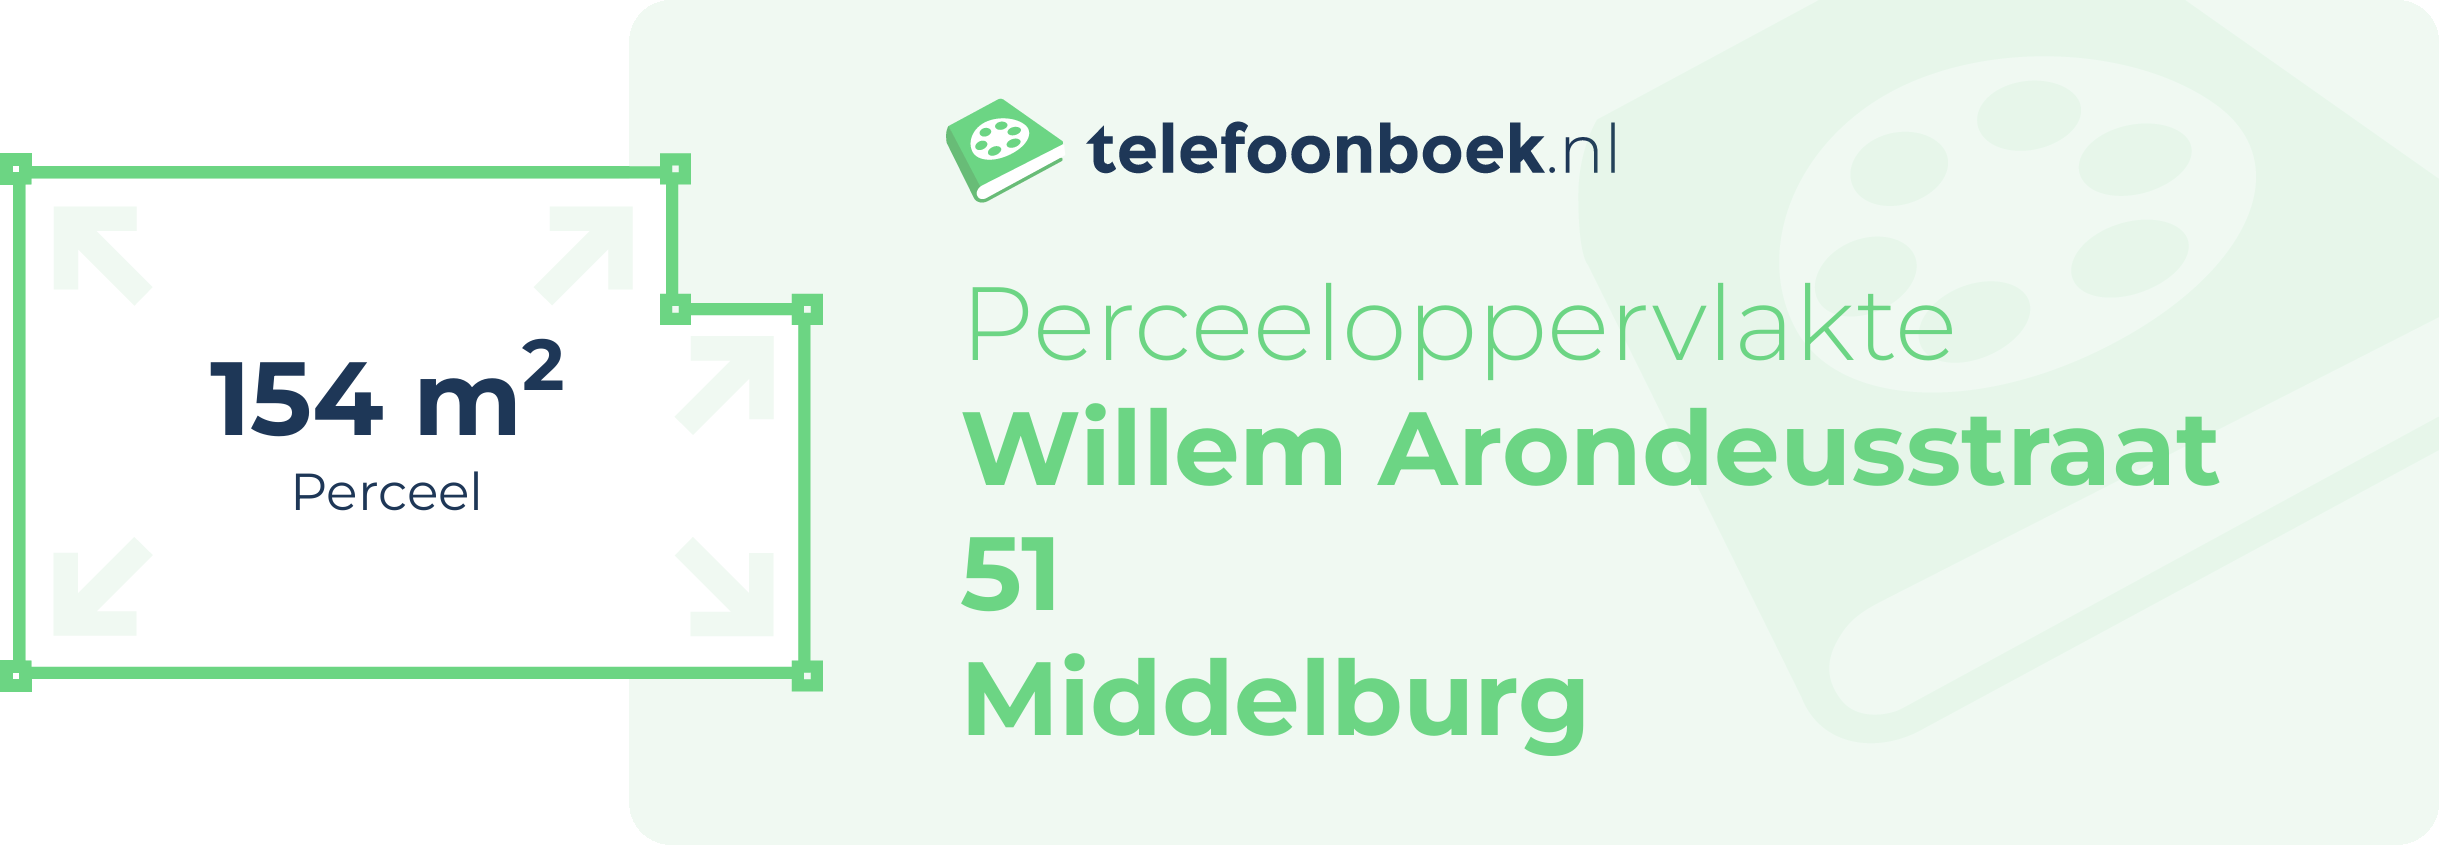 Perceeloppervlakte Willem Arondeusstraat 51 Middelburg